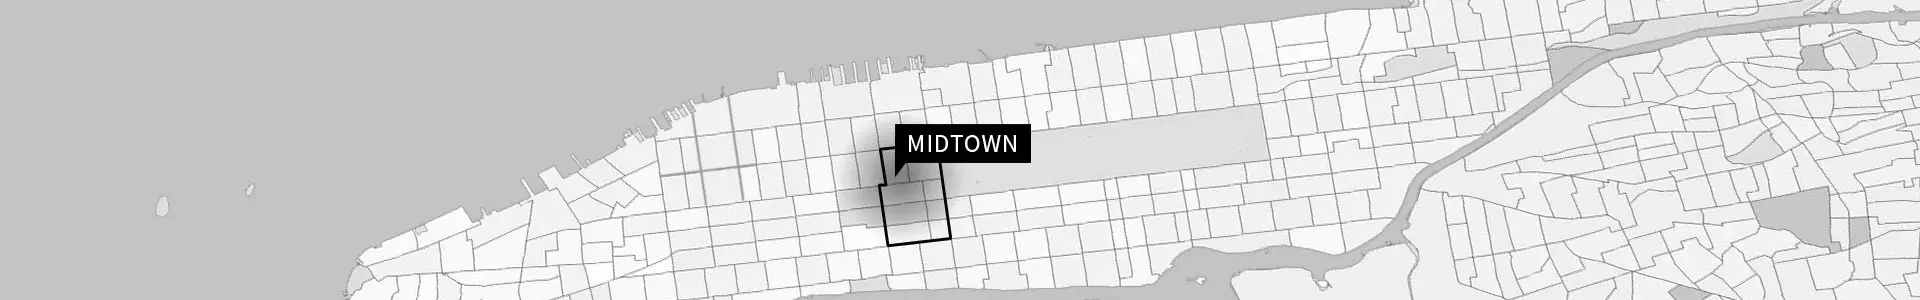 Midtown carte